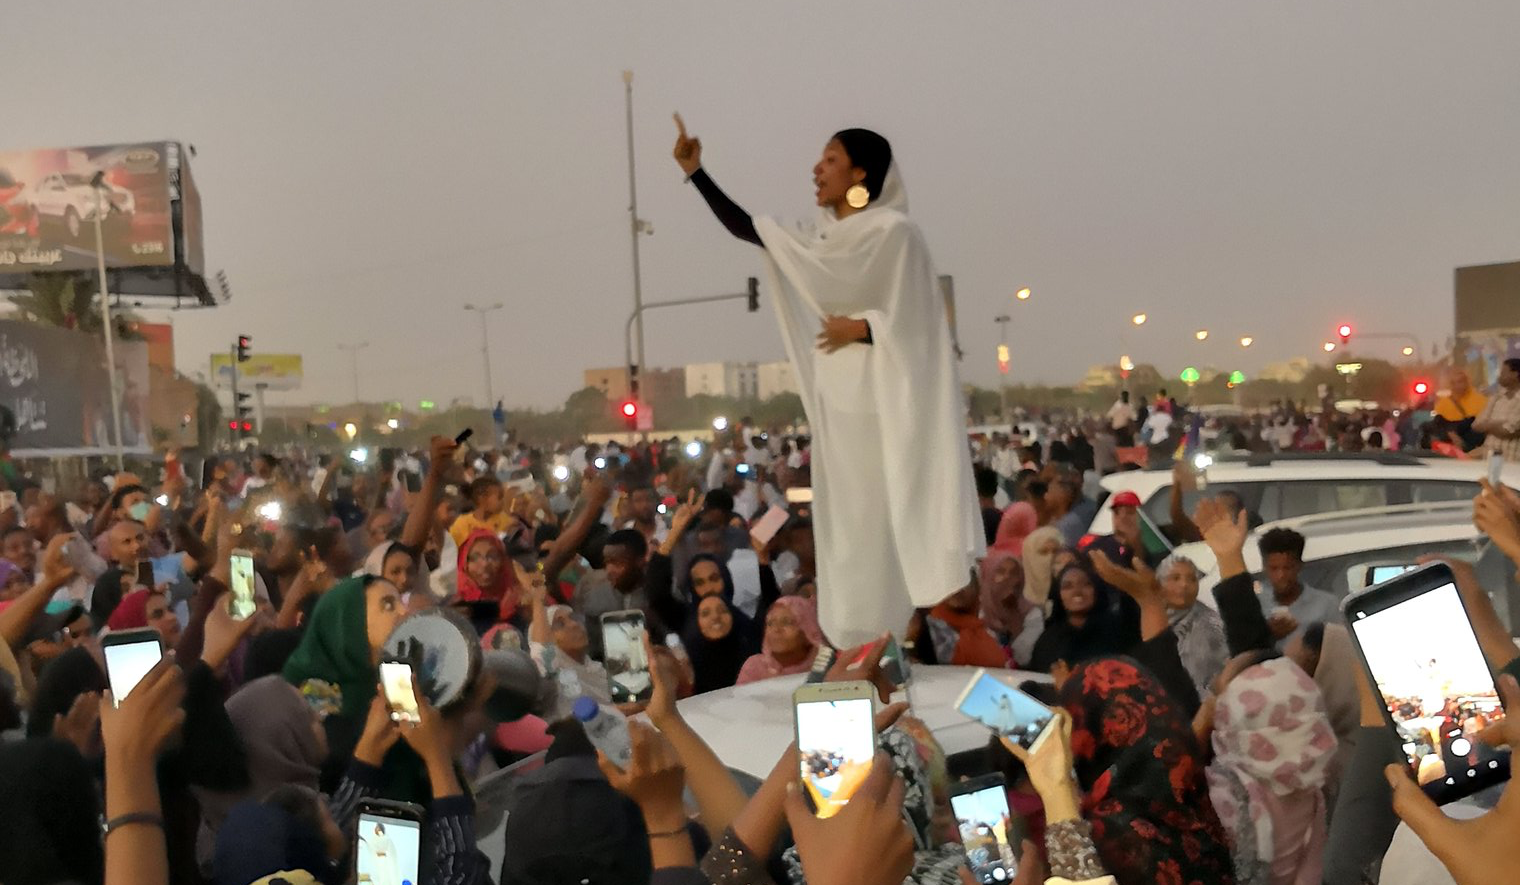 De Nubische koningin die de veldmaarschalk verdreef